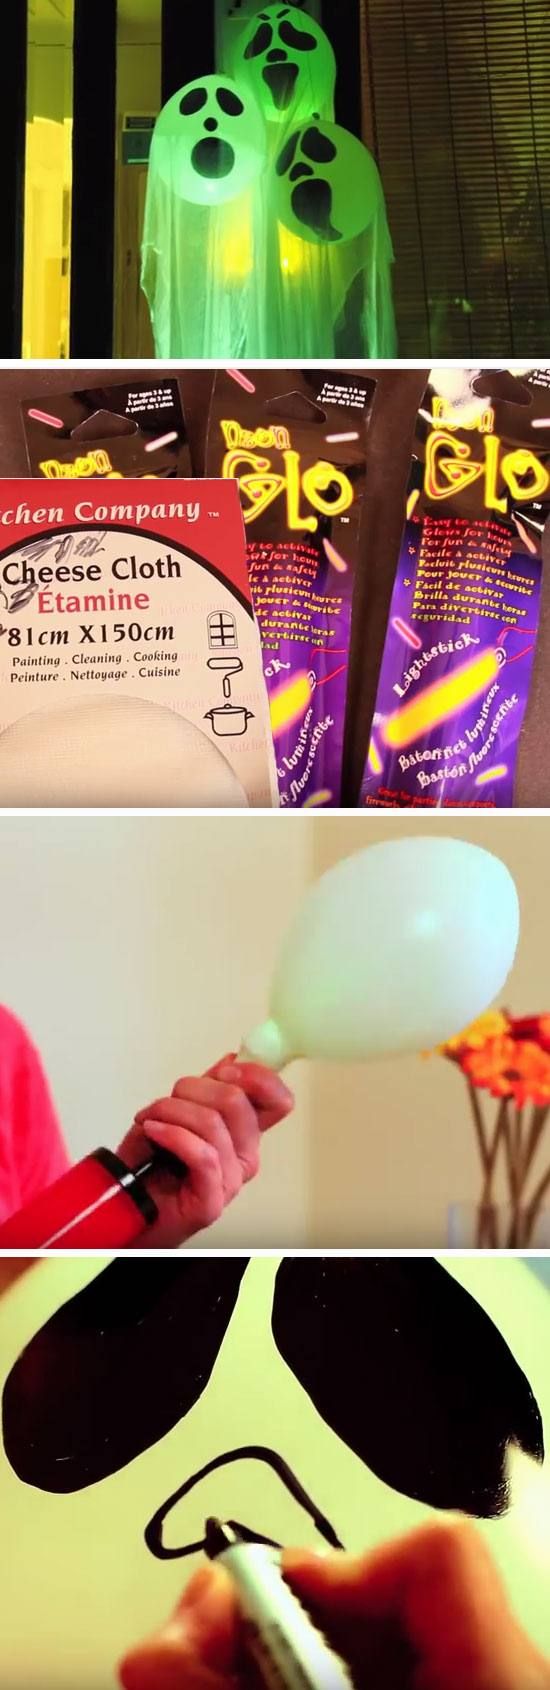 10 ideas sorprendentes para decorar con globos en Halloween 9